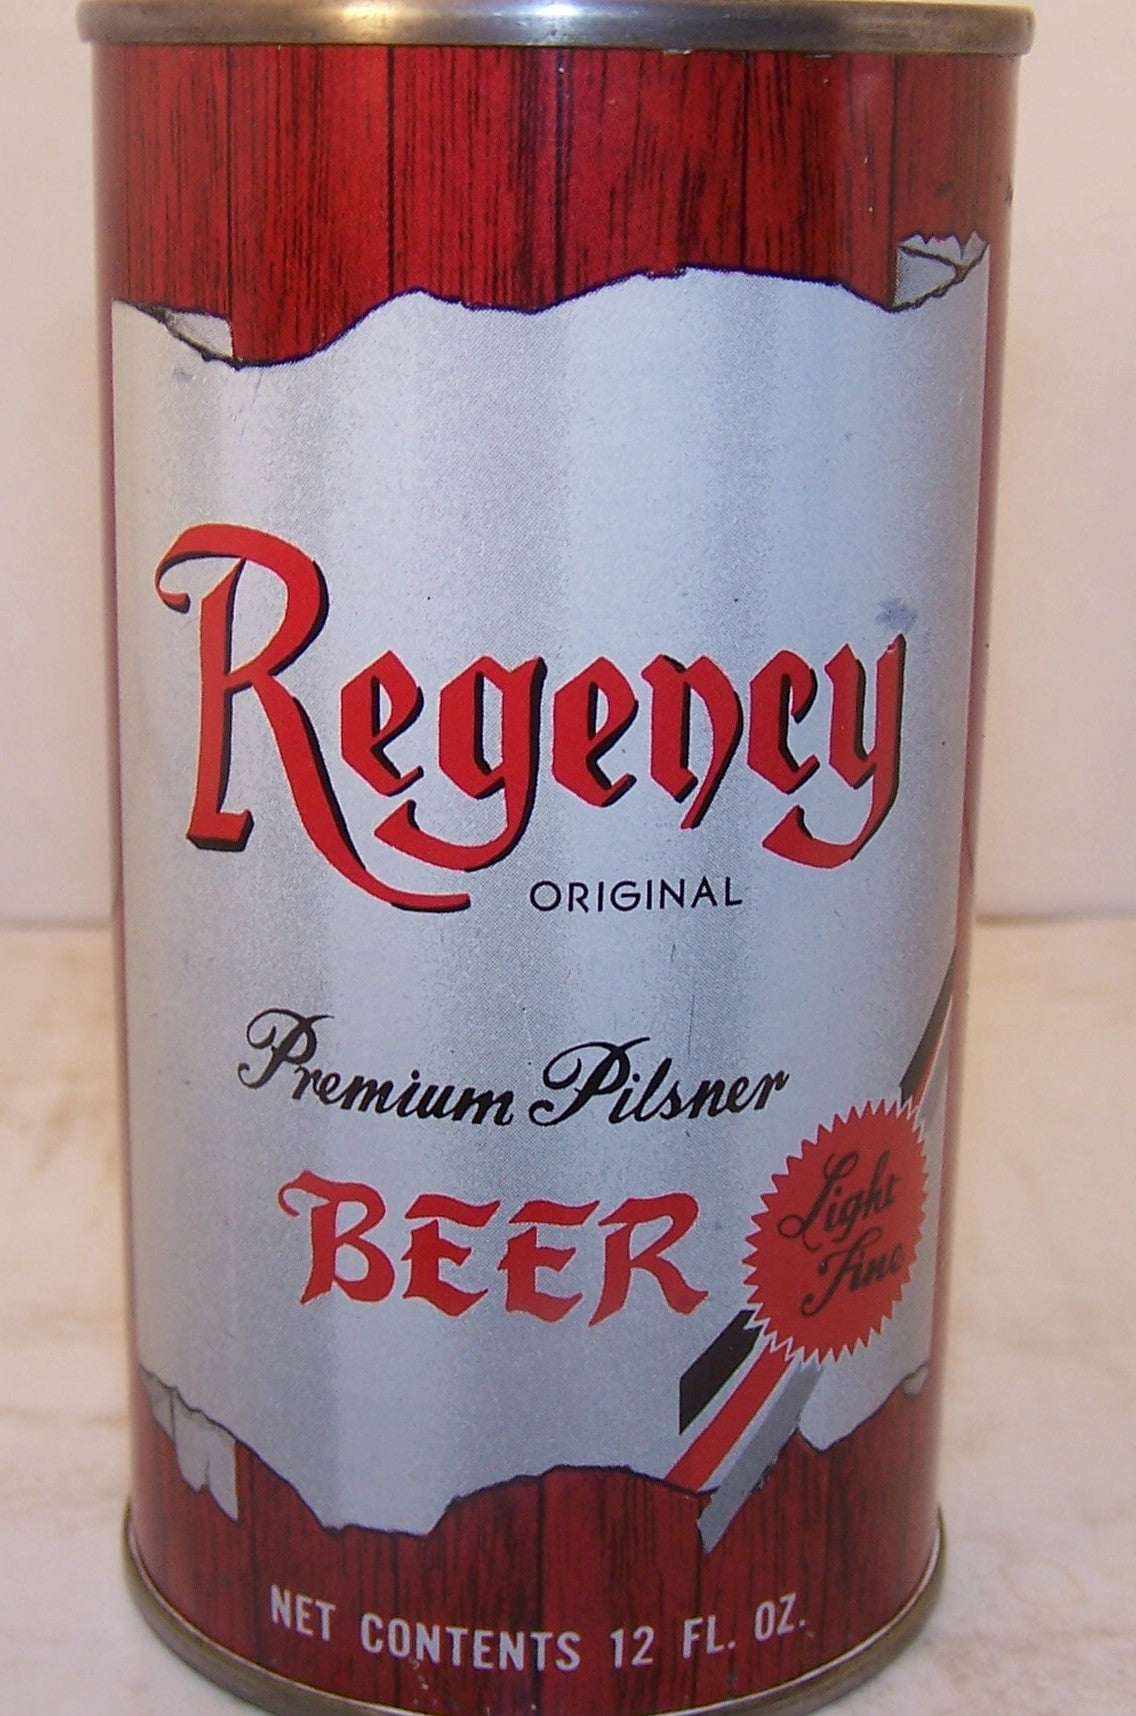 Regency Premium Pilsner Beer, USBC 122-6, Grade 1/1+ Sold 1/6/15